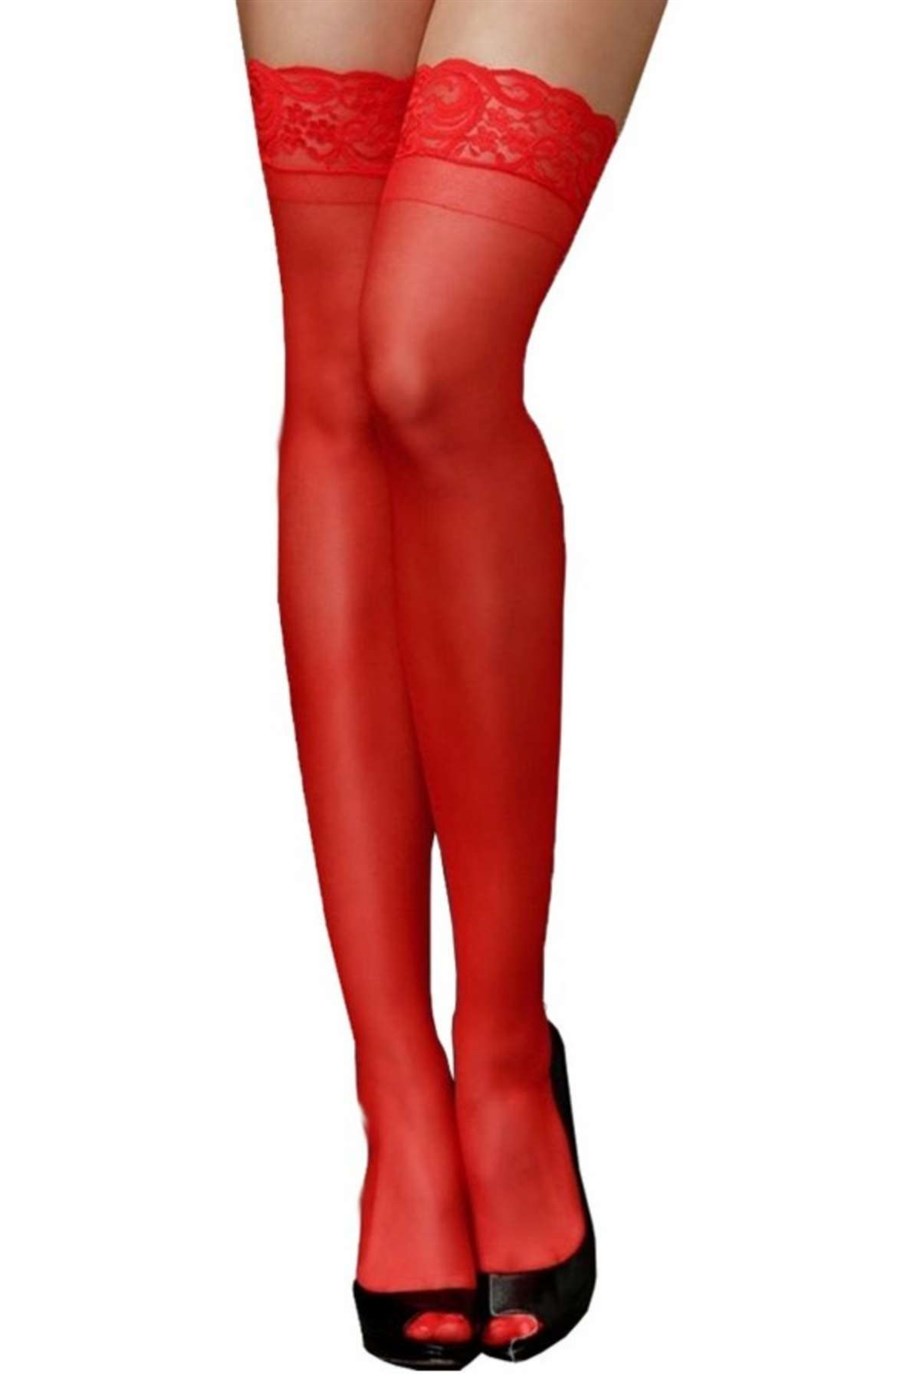 Bella Notte Kırmızı Dantelli Slikonlu Düz Jartiyer Çorabı 1110